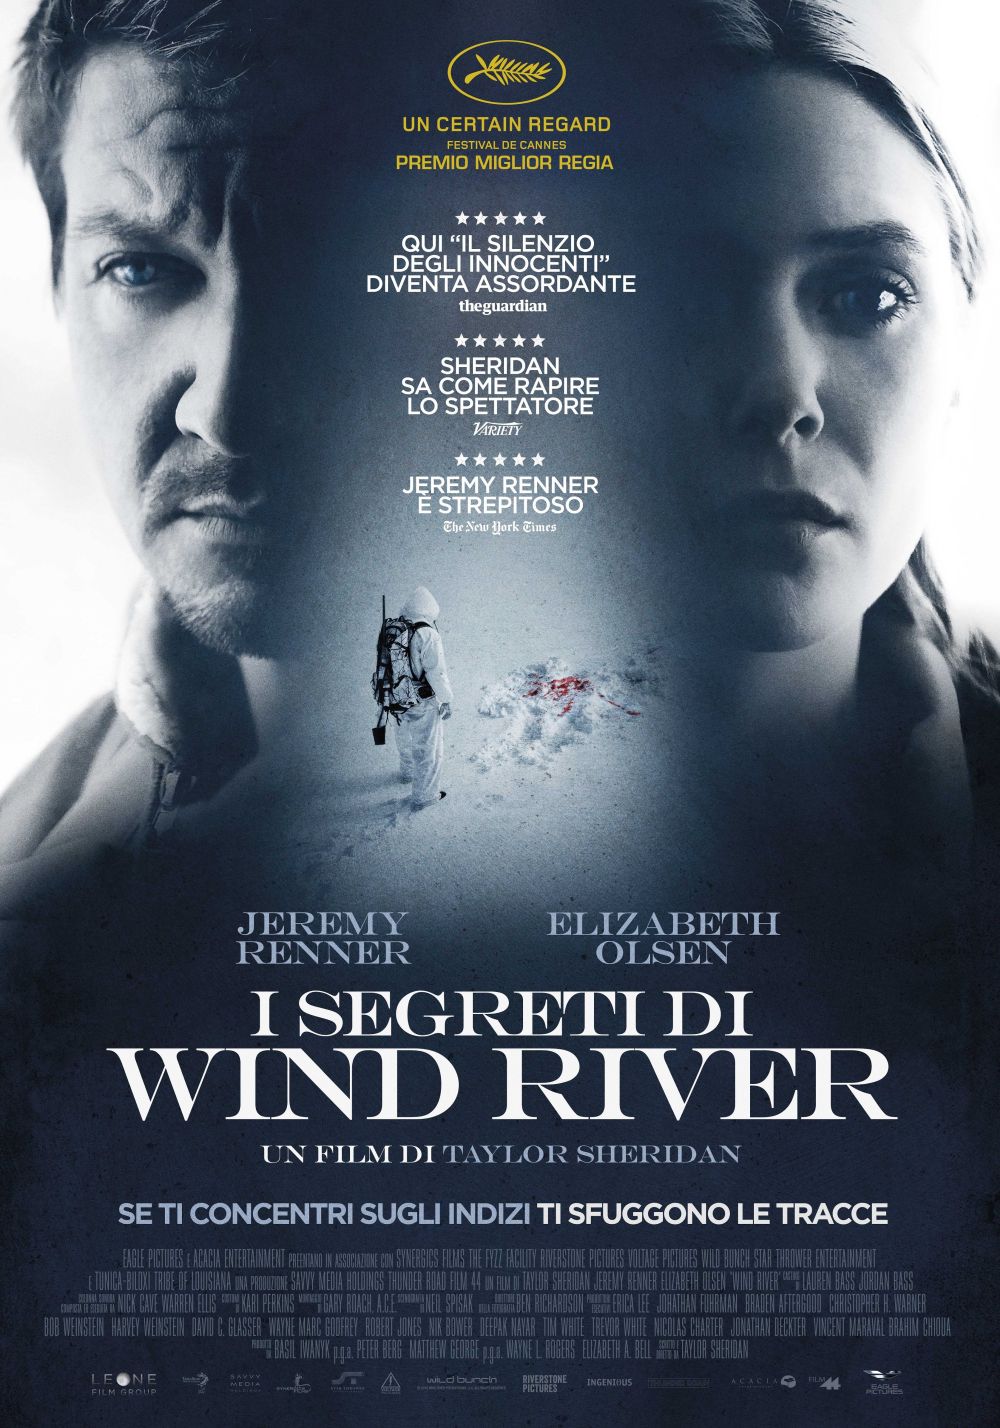 https://movieplayer.it/film/i-segreti-di-wind-river_45127/